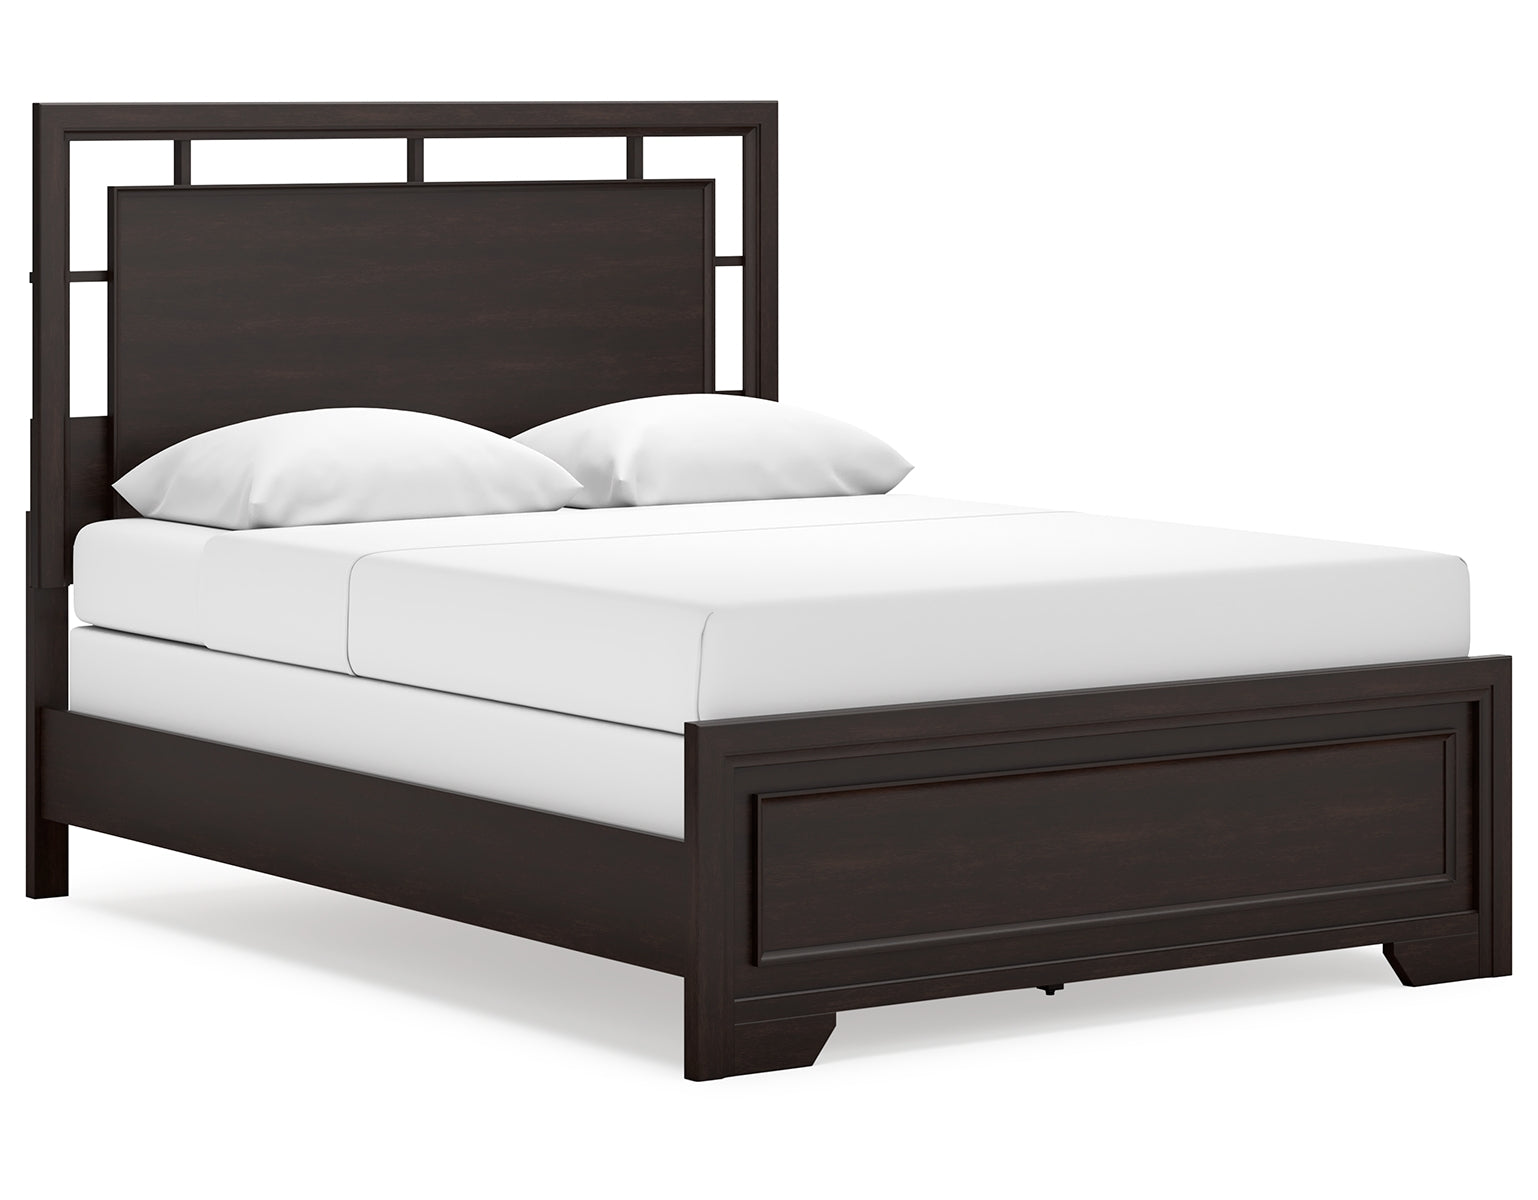 Covetown Queen Panel Bed with 2 Nightstands